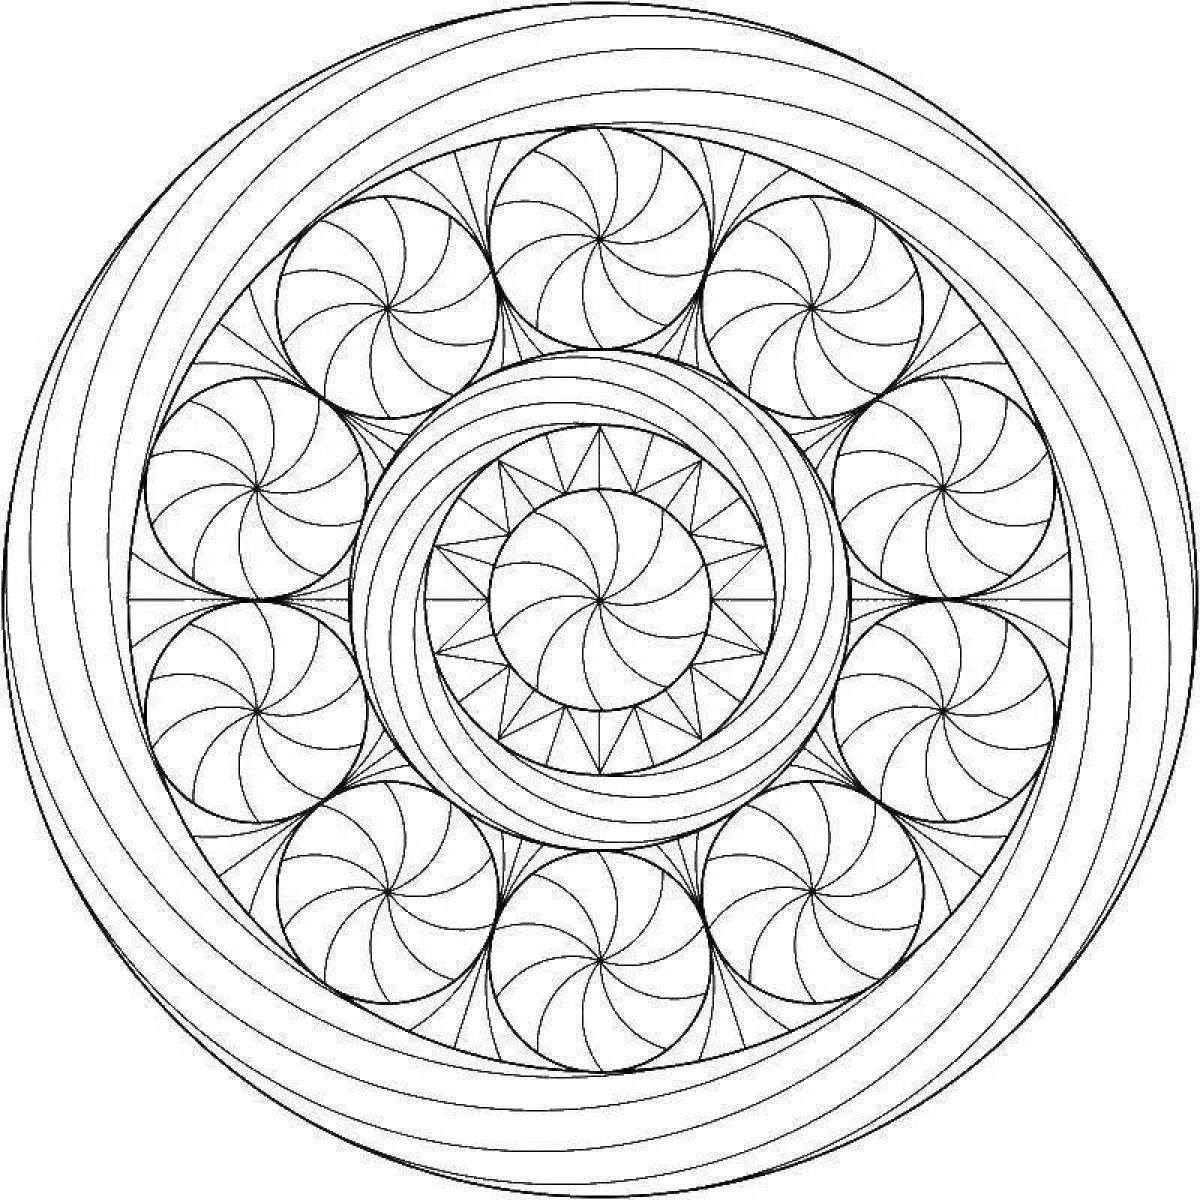 Орнамент в круге